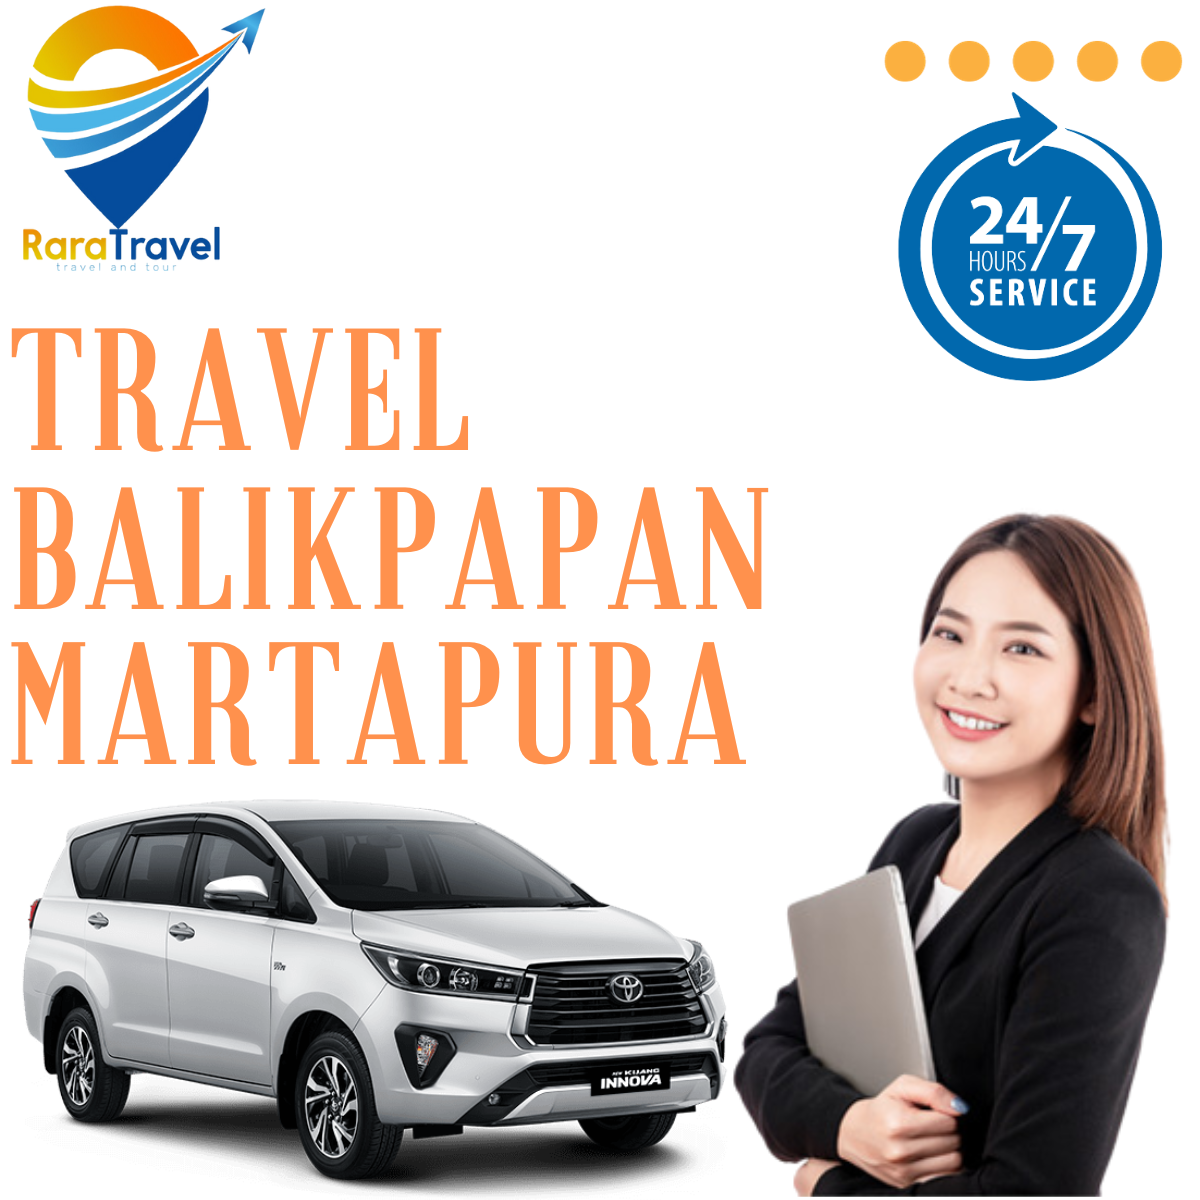 Travel Balikpapan Martapura Murah: Harga Tiket + Jadwal + Fasilitas + Layanan PP 24 Jam